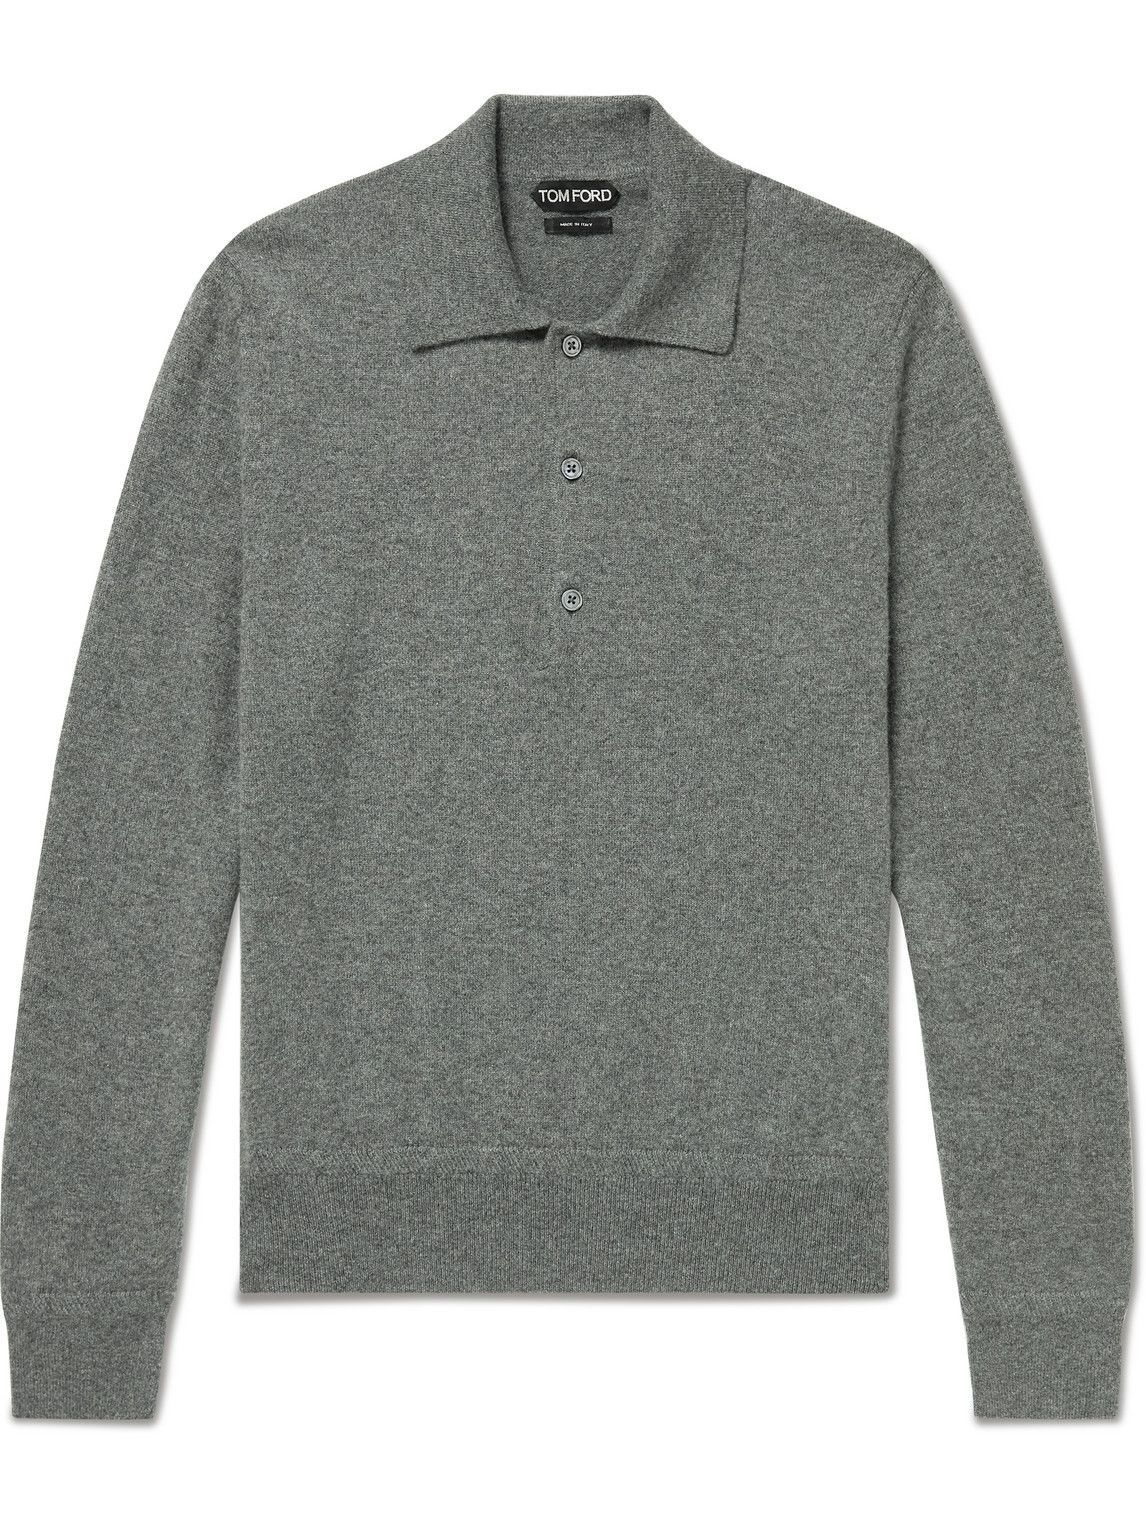 TOM FORD - Cashmere Polo Shirt - Gray TOM FORD